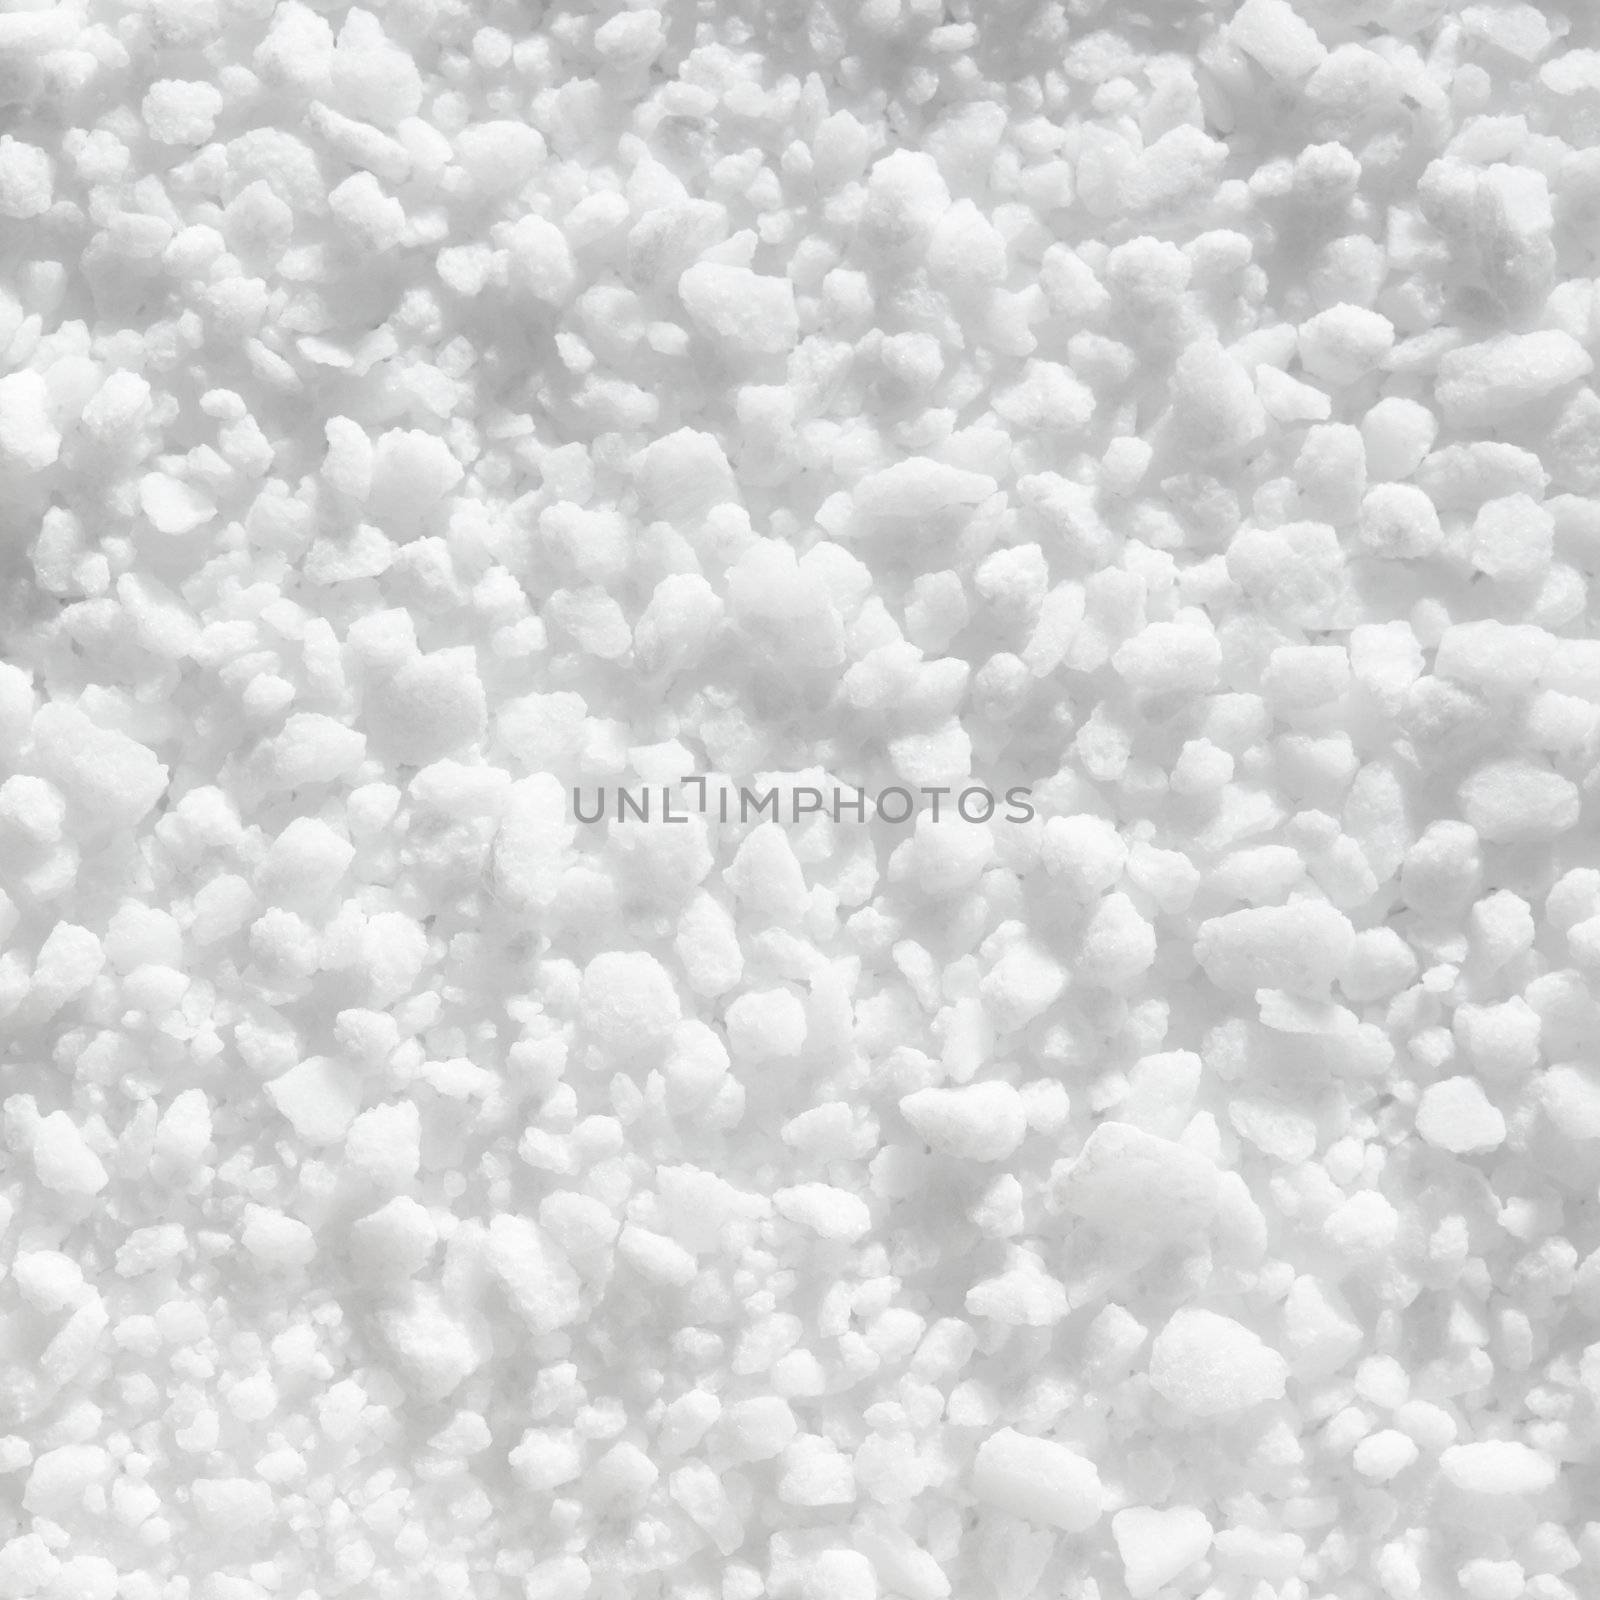 Coarse salt used in salt grinders / mills